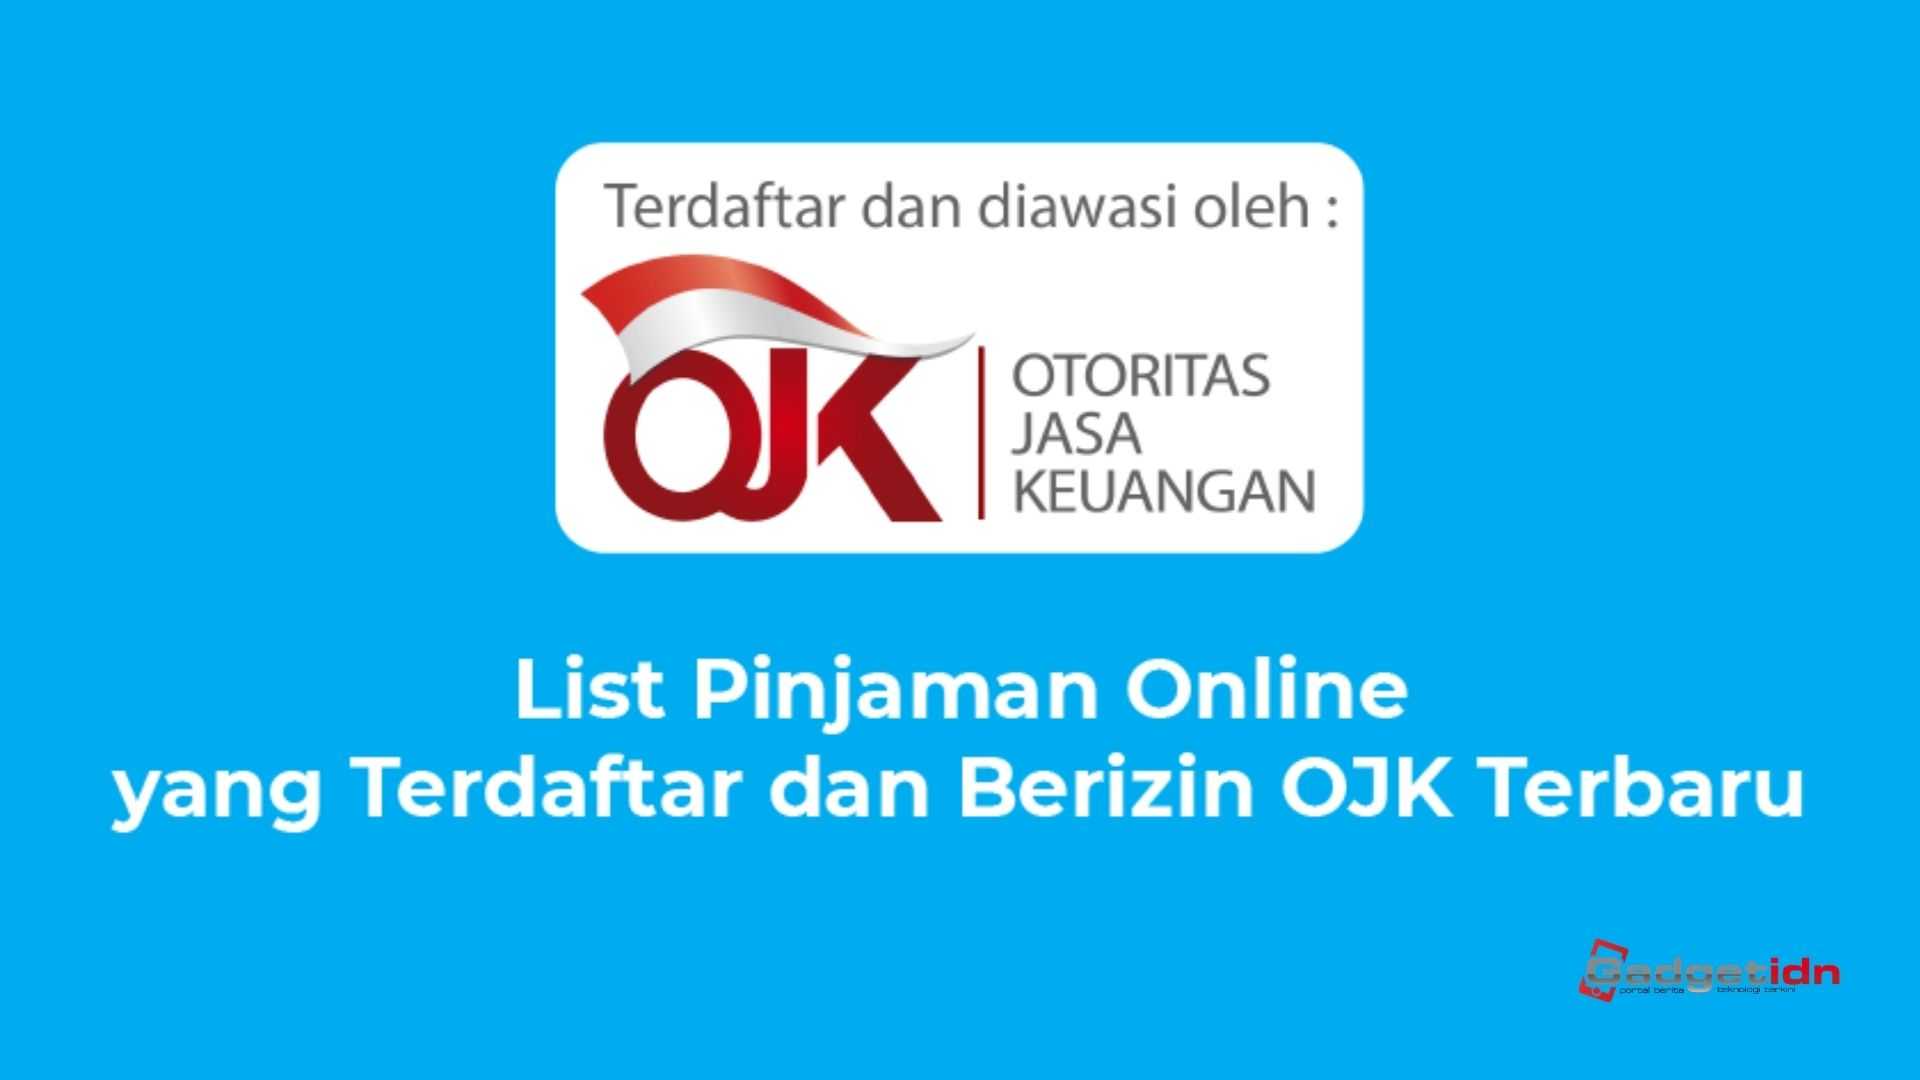 pinjaman online terdaftar di ojk